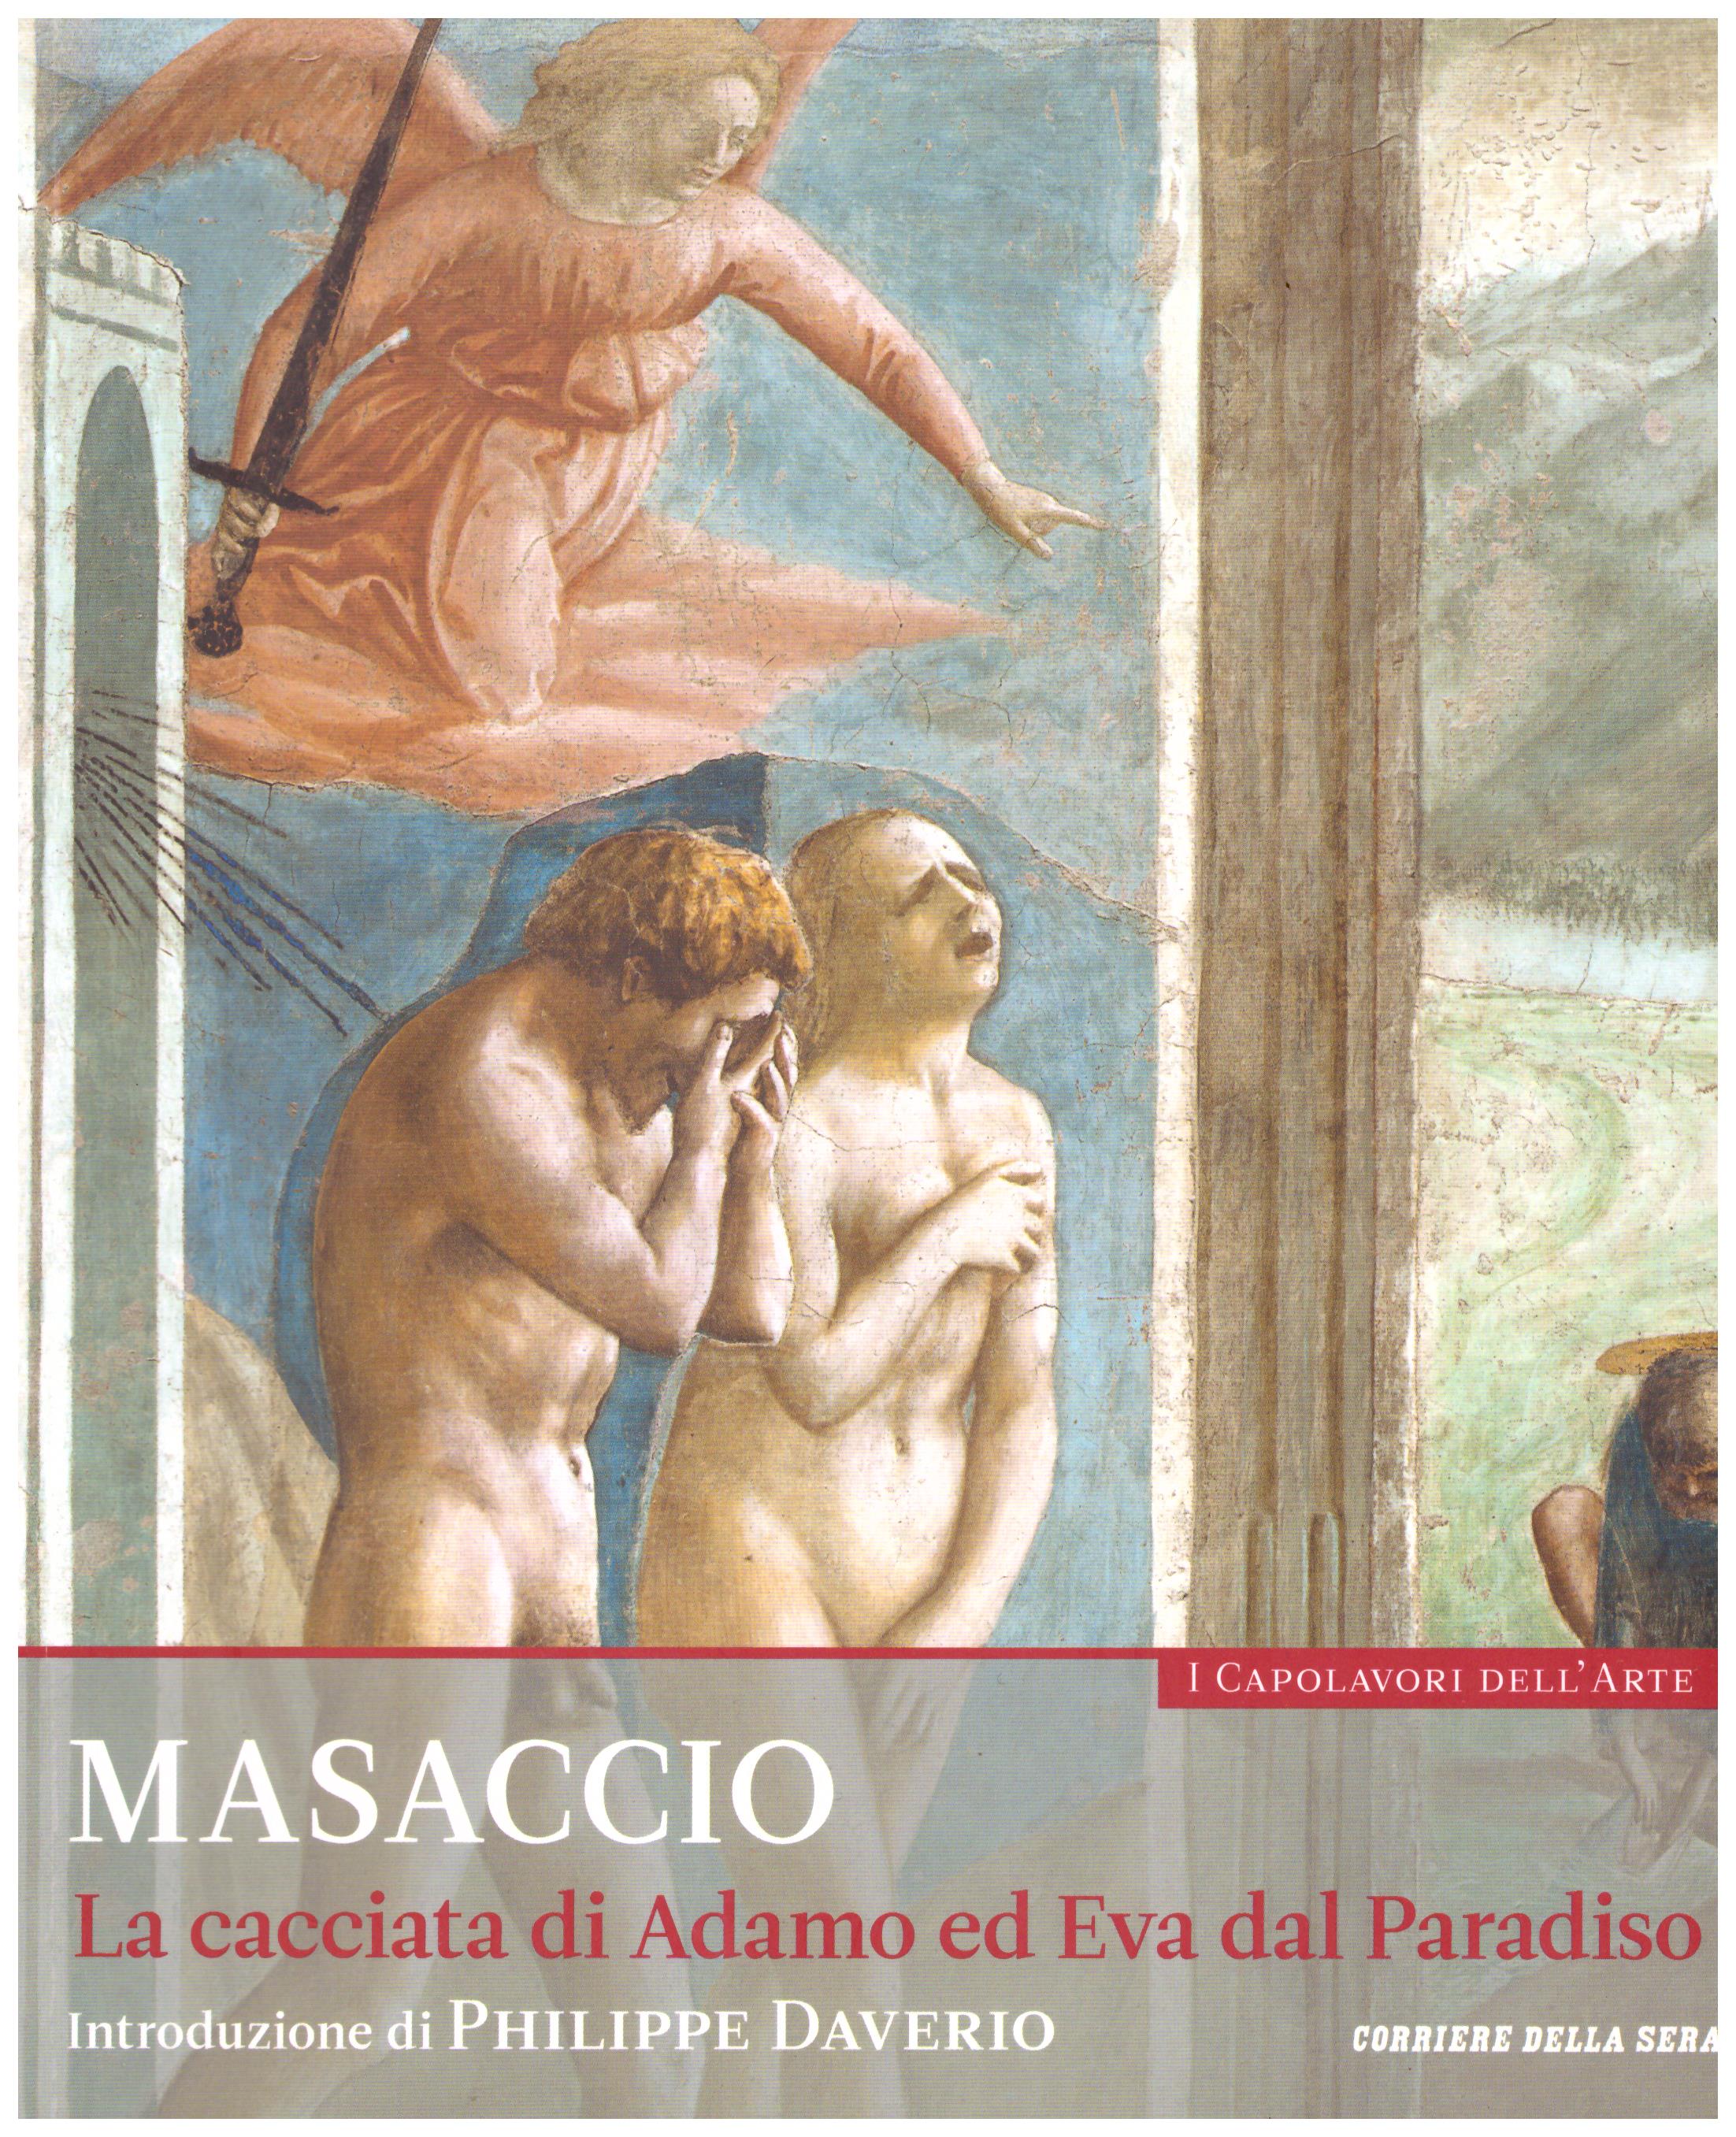 Titolo: I capolavori dell'arte, Masaccio n.29  Autore : AA.VV.   Editore: education,it/corriere della sera, 2015